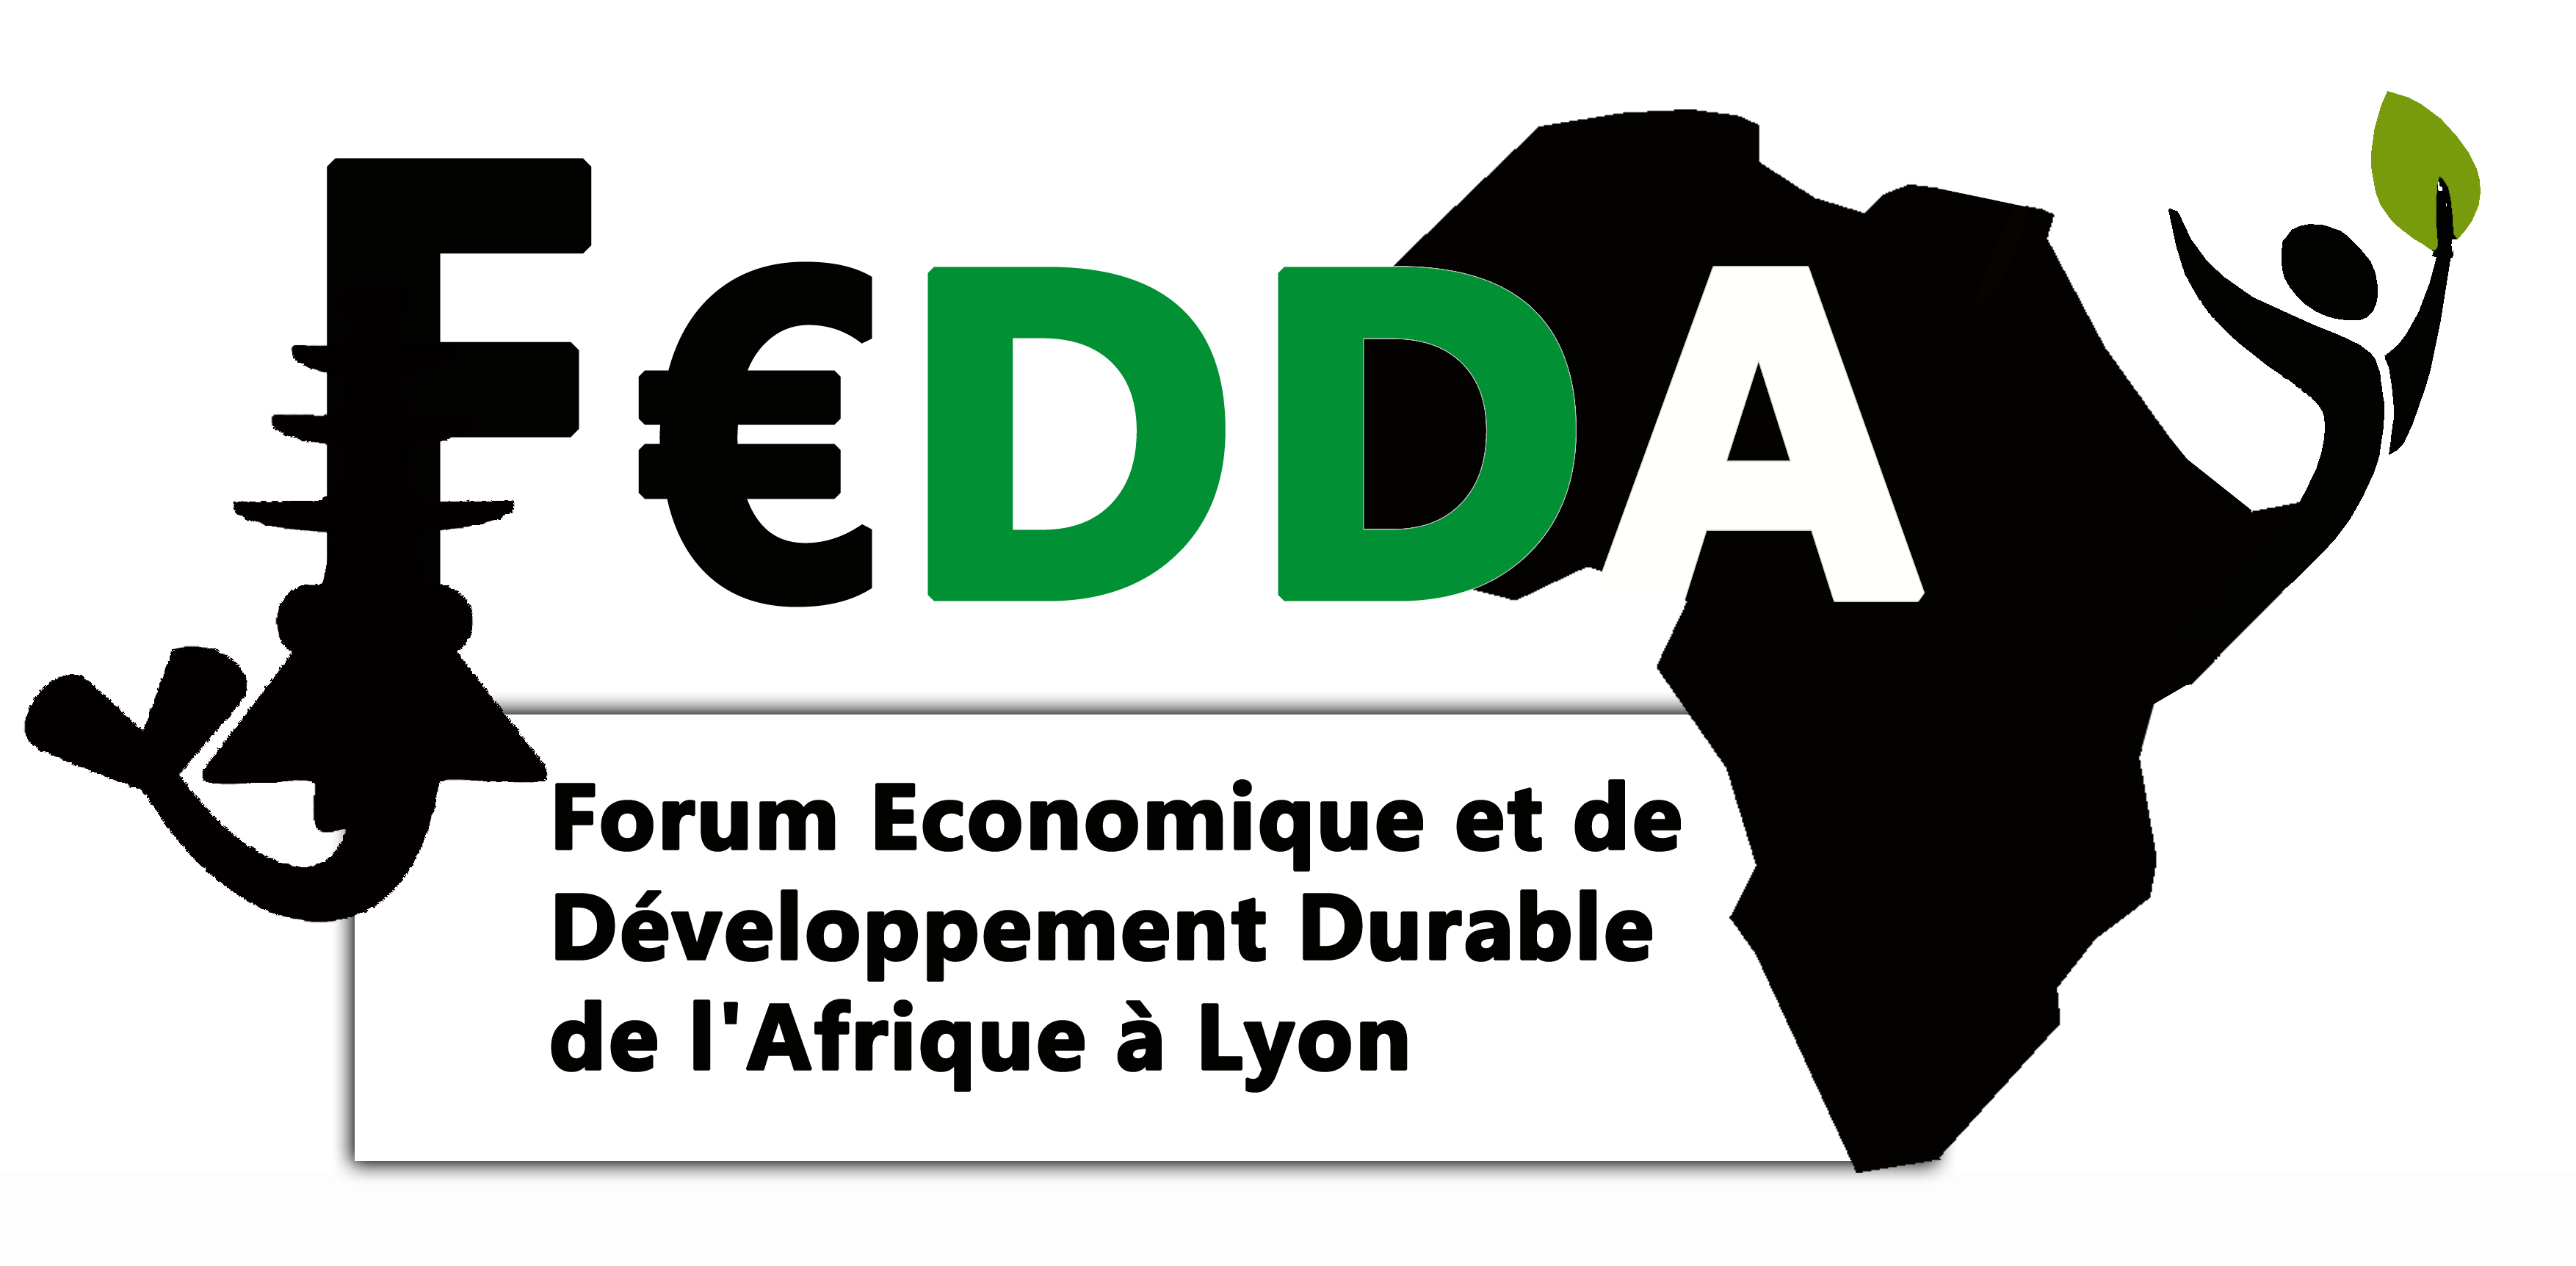 Forum Economique pour le Développement Durable en Afrique